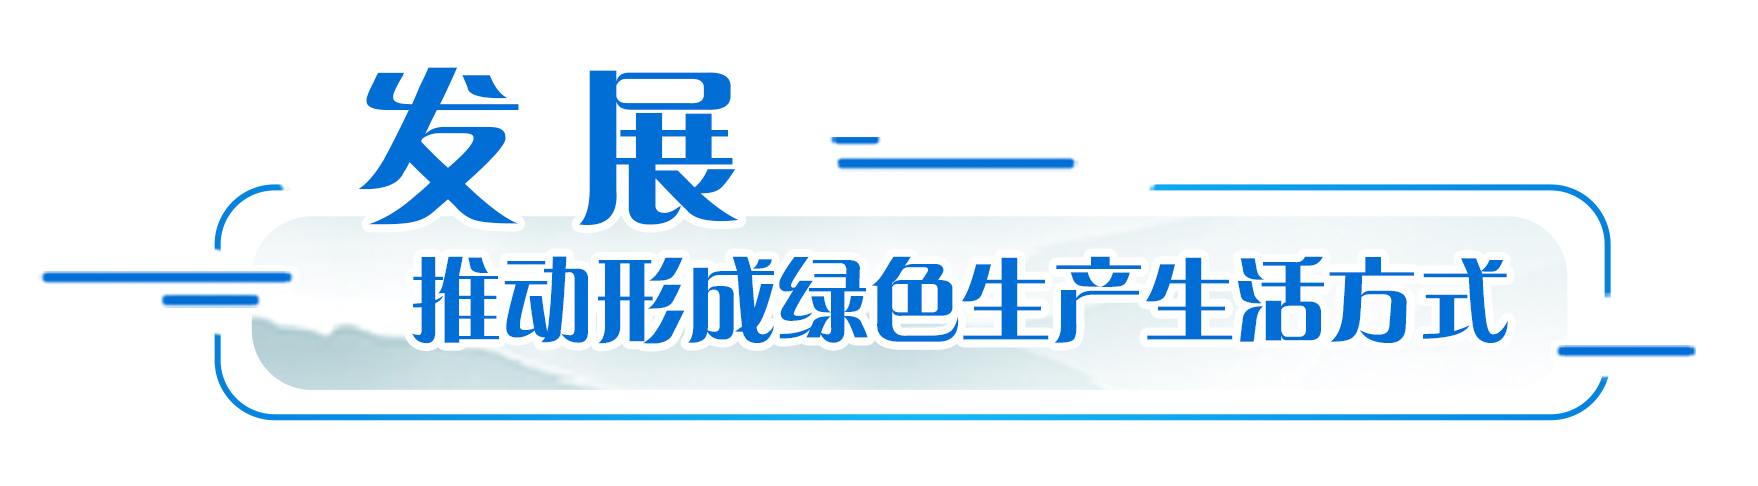 习总书记致信祝贺中国日报创刊40周年